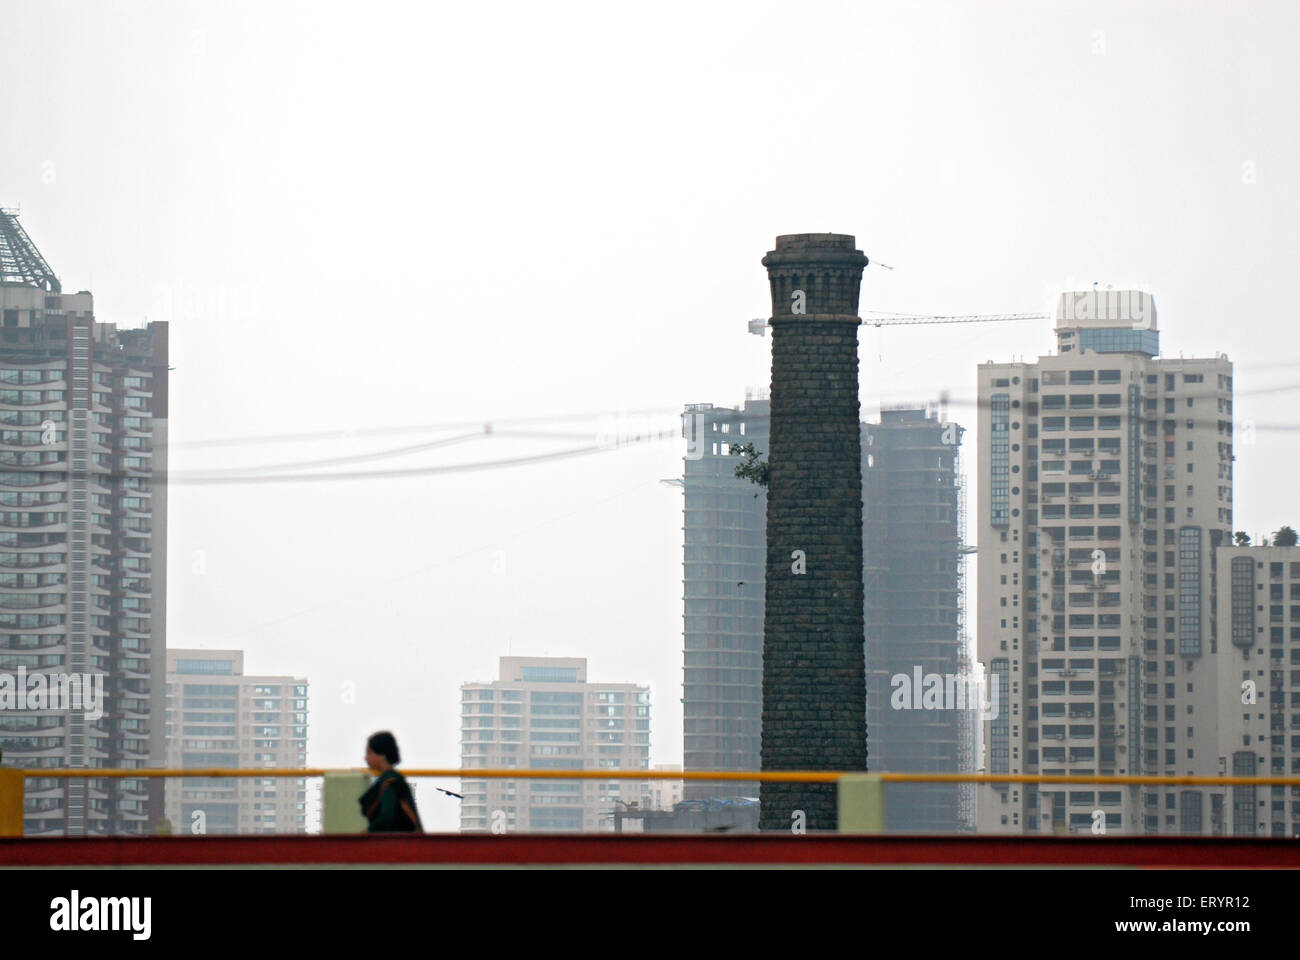 Cheminée d'une ancienne usine fermée et de nouveaux gratte-ciels modernes , Basse Parel , Bombay , Mumbai , Maharashtra , Inde , Asie Banque D'Images